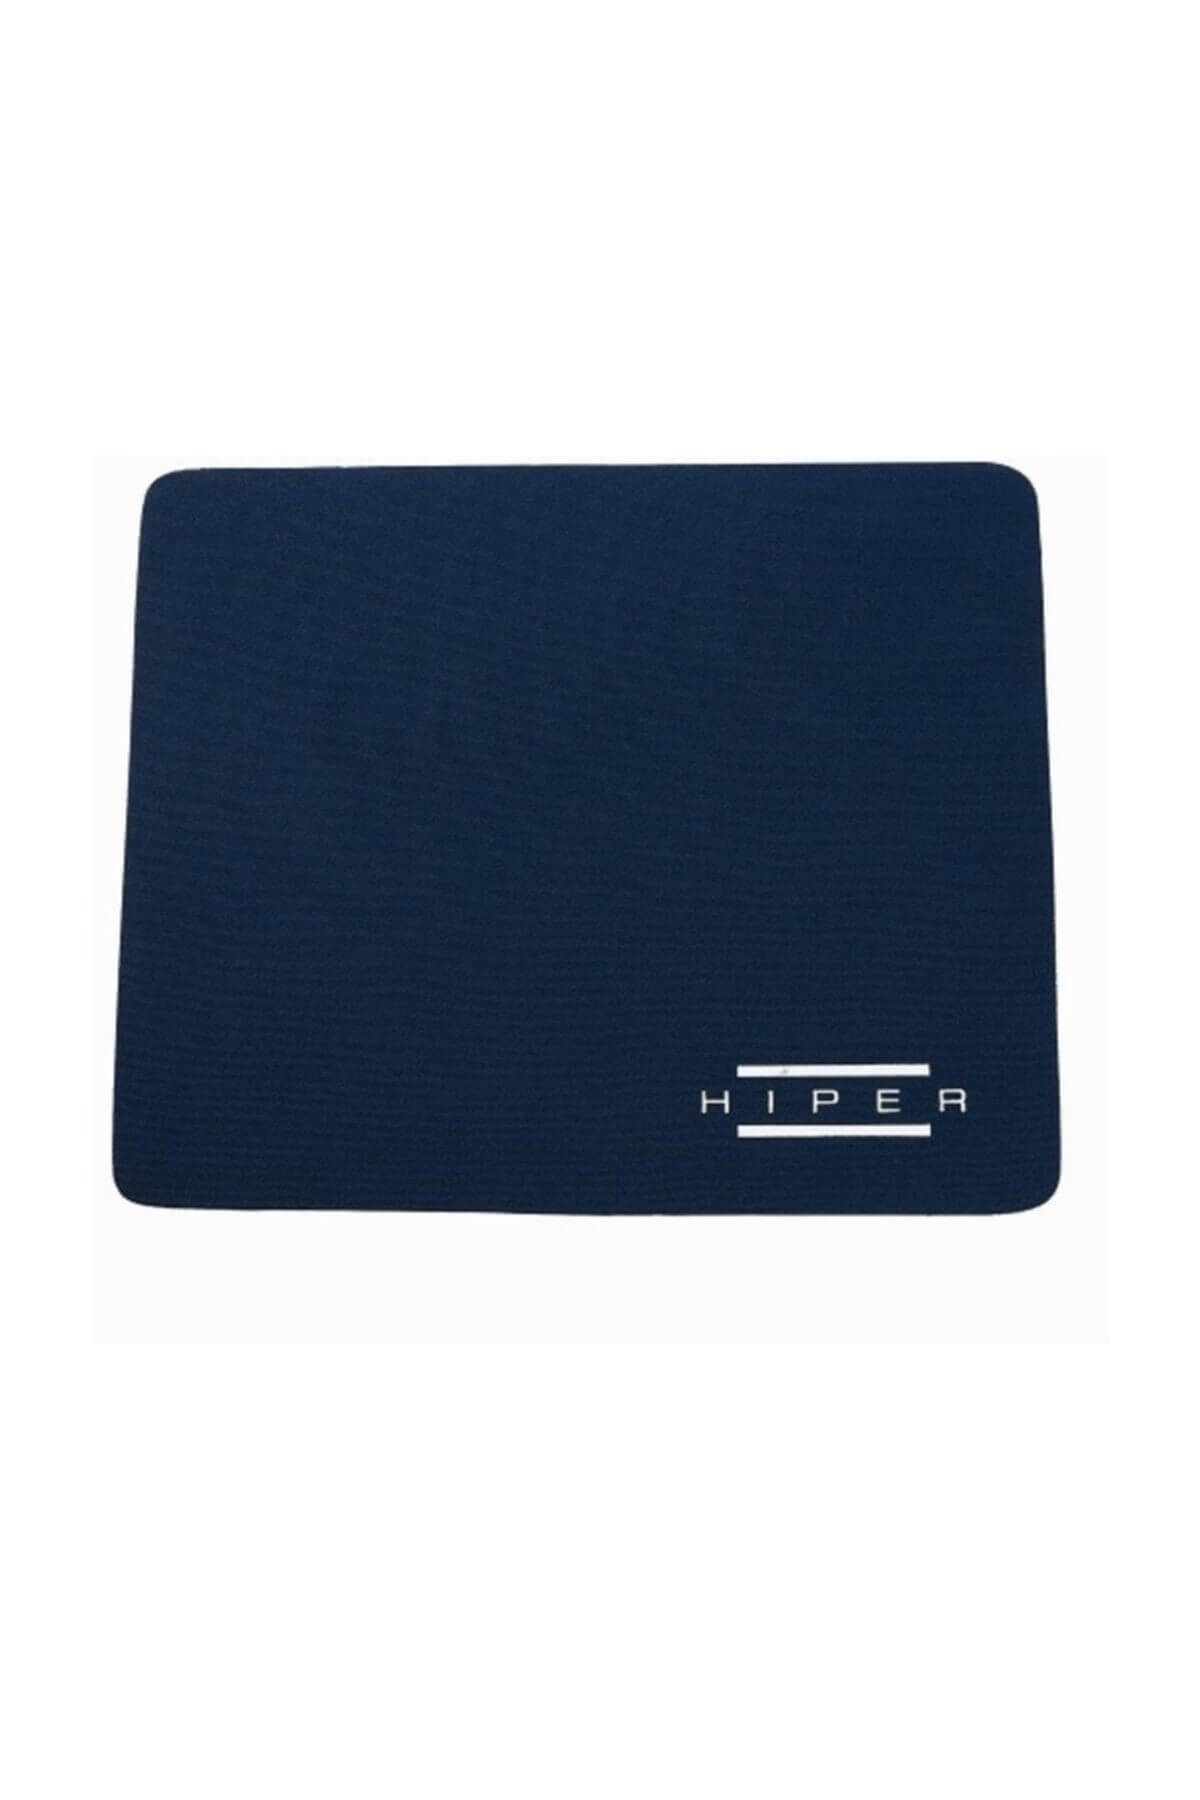 Hiper HMP-M1 Lacivert Mouse pad